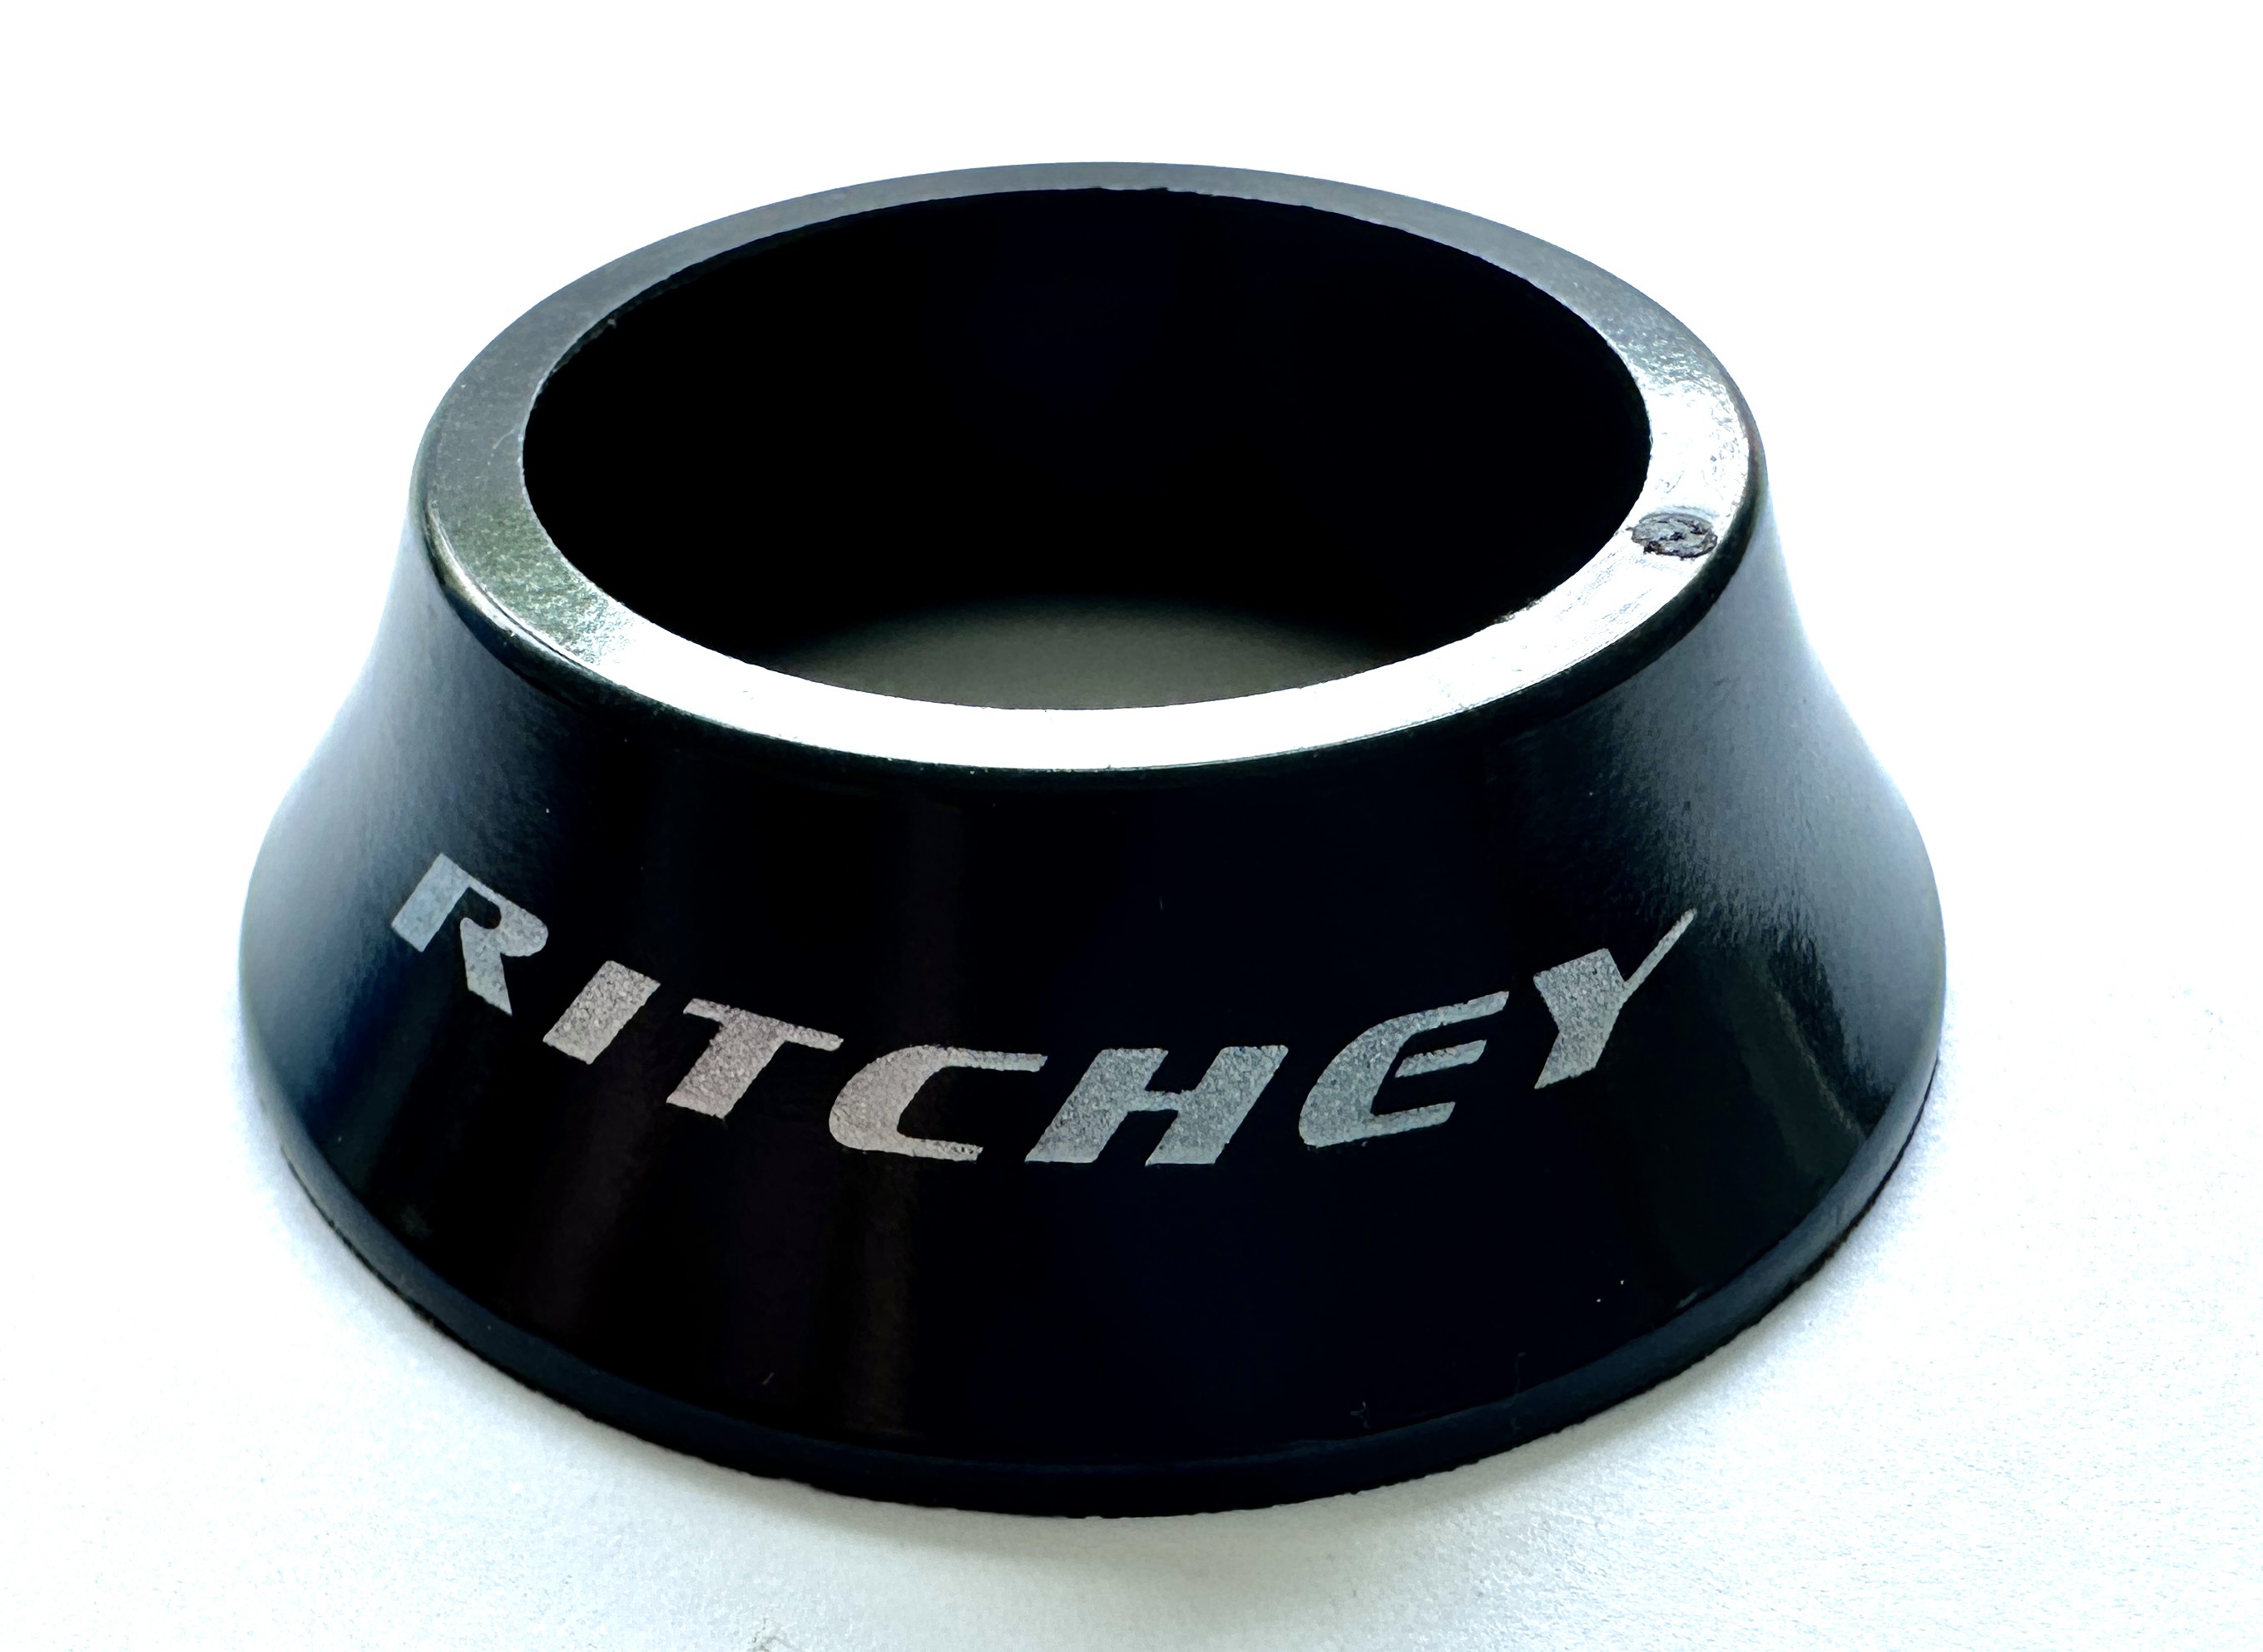 Entretoise conique de Ritchey pour jeu de direction semi-intégré brillant